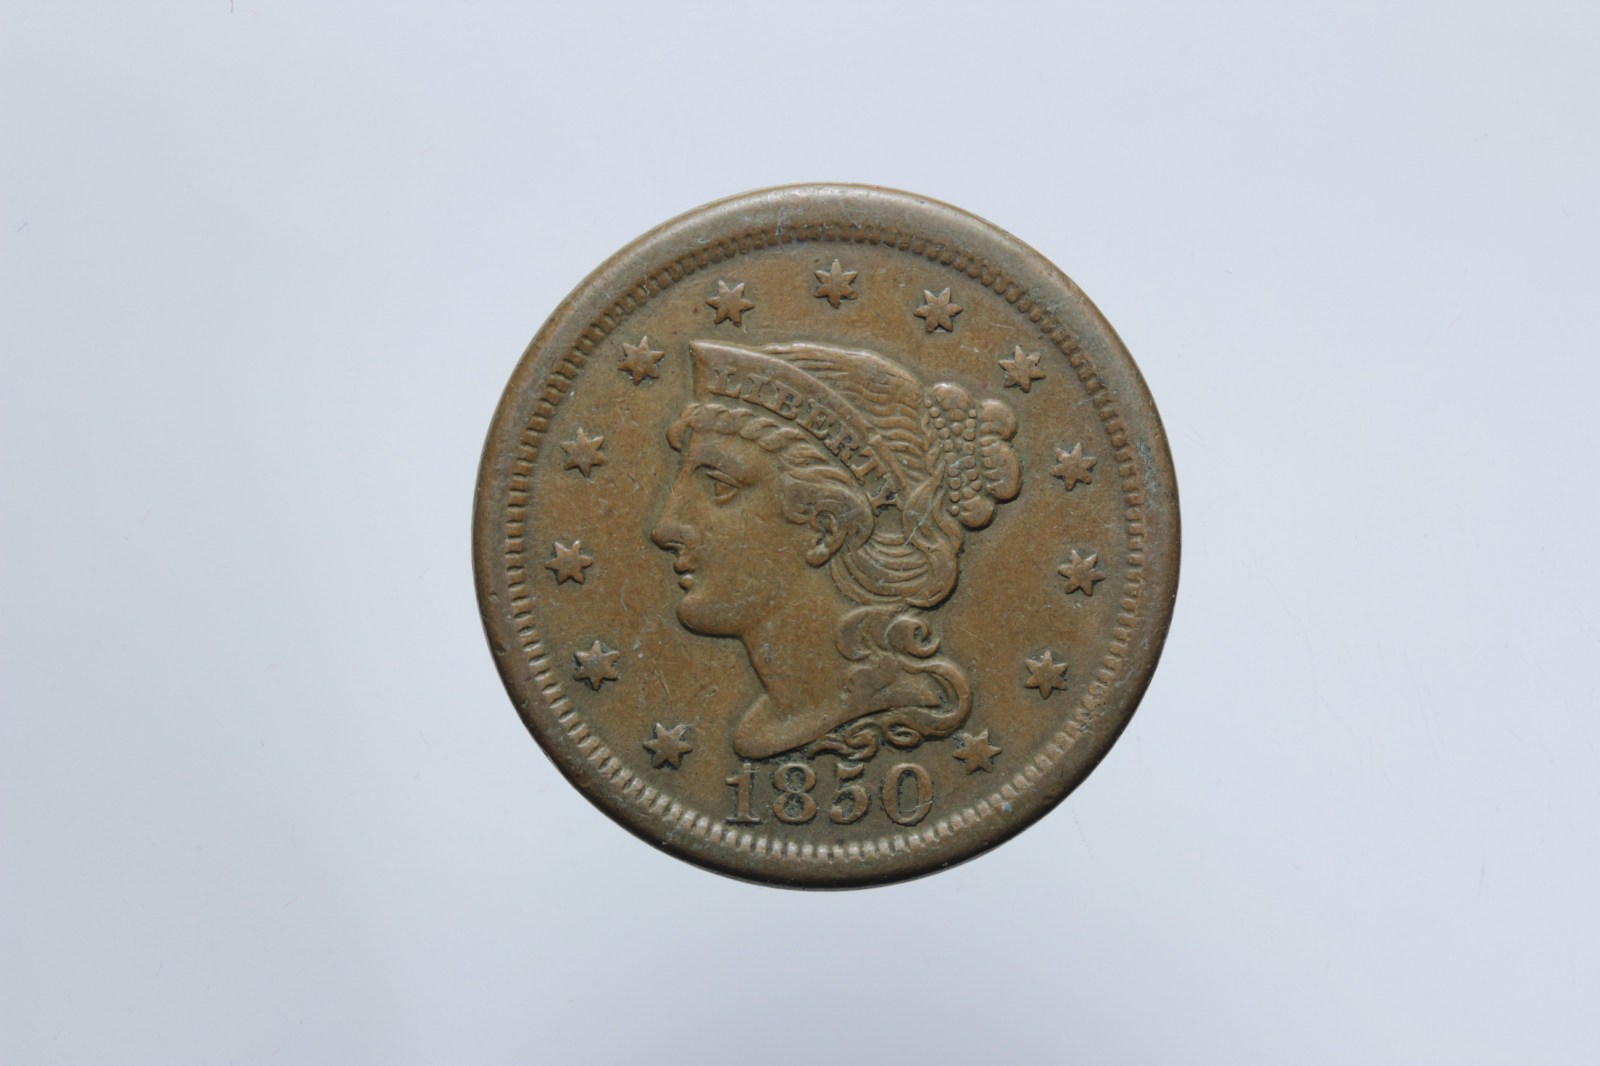 USA ONE CENT 1850 BRAIDED HAIR BB++